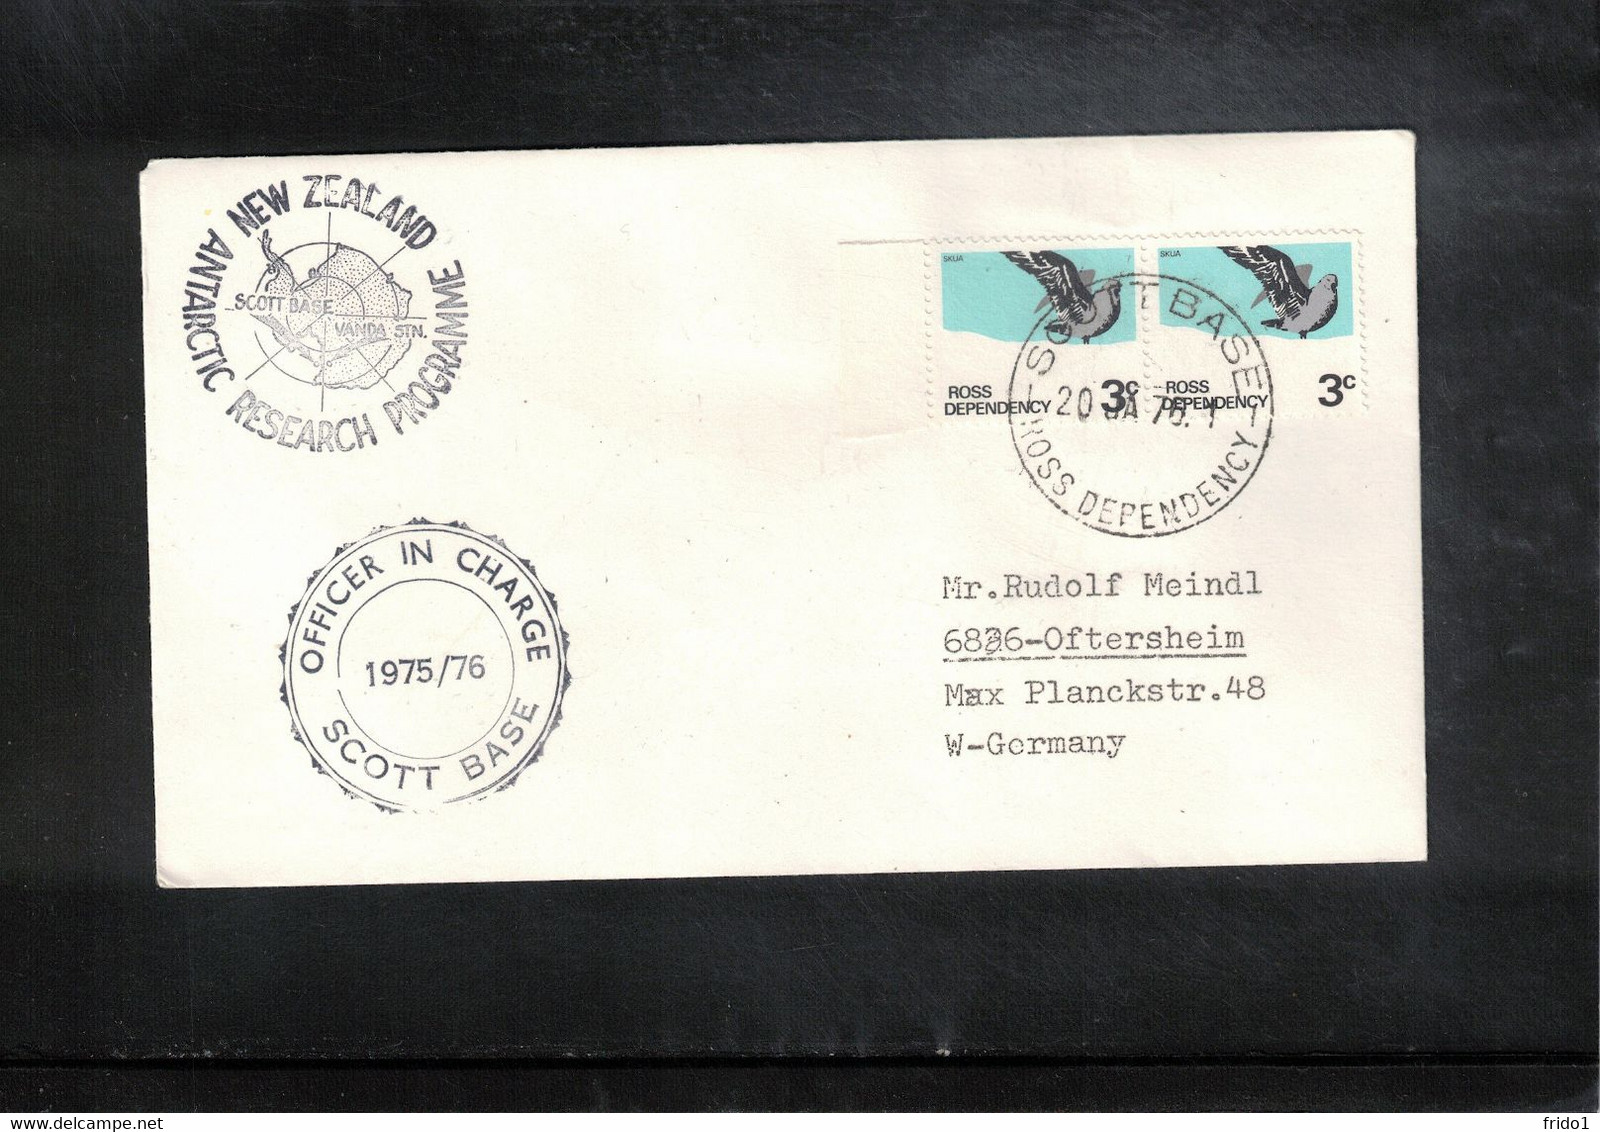 Ross Dependency 1976 Antarctica Scott Base Interesting Letter - Storia Postale